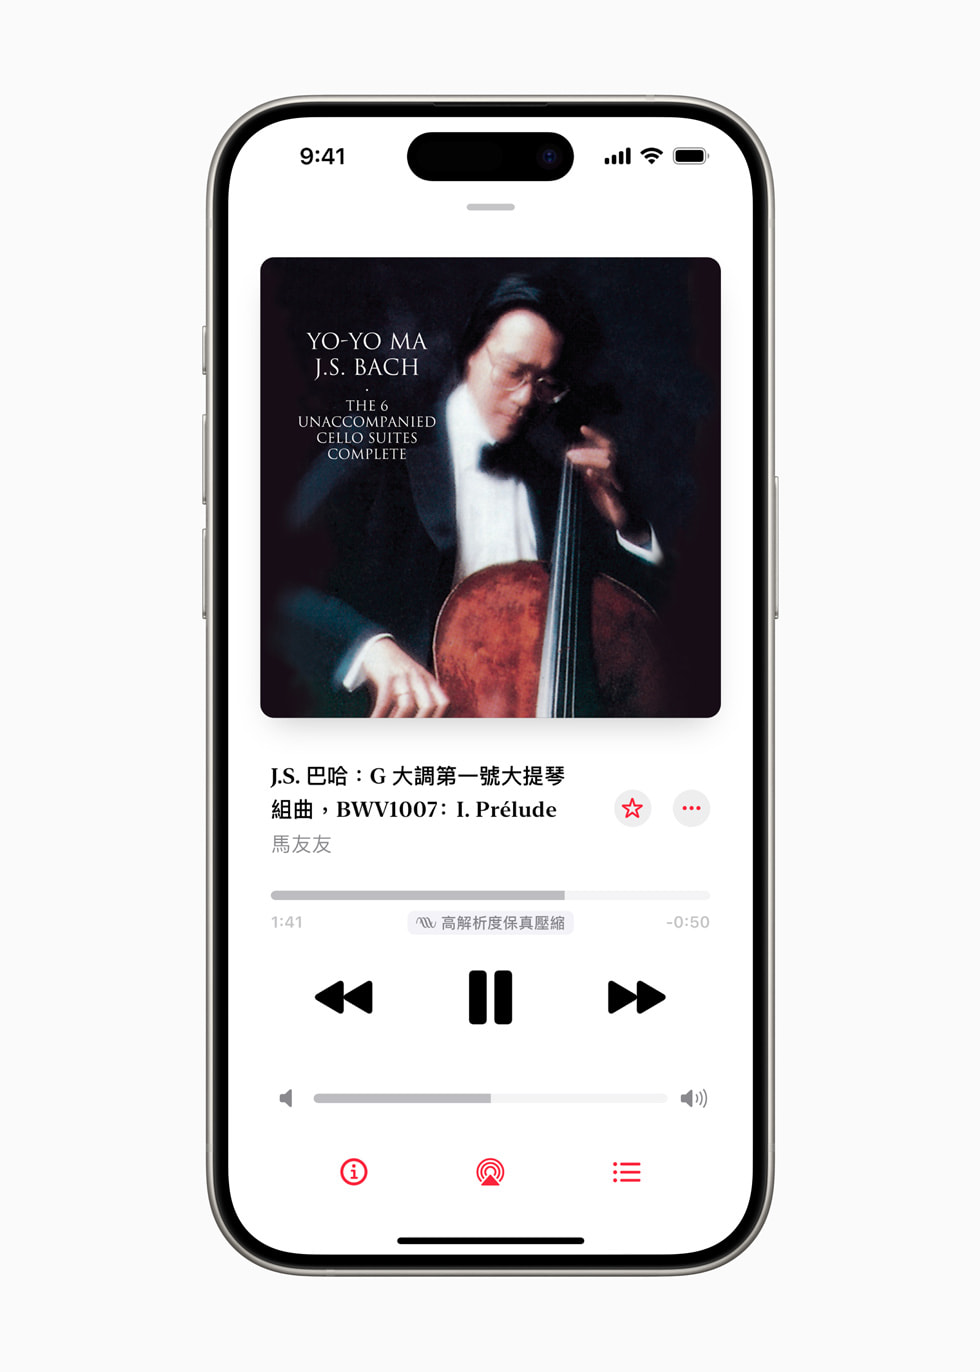 「Apple Music 古典樂」中的現正播放體驗顯示在 iPhone 15 Pro 上。